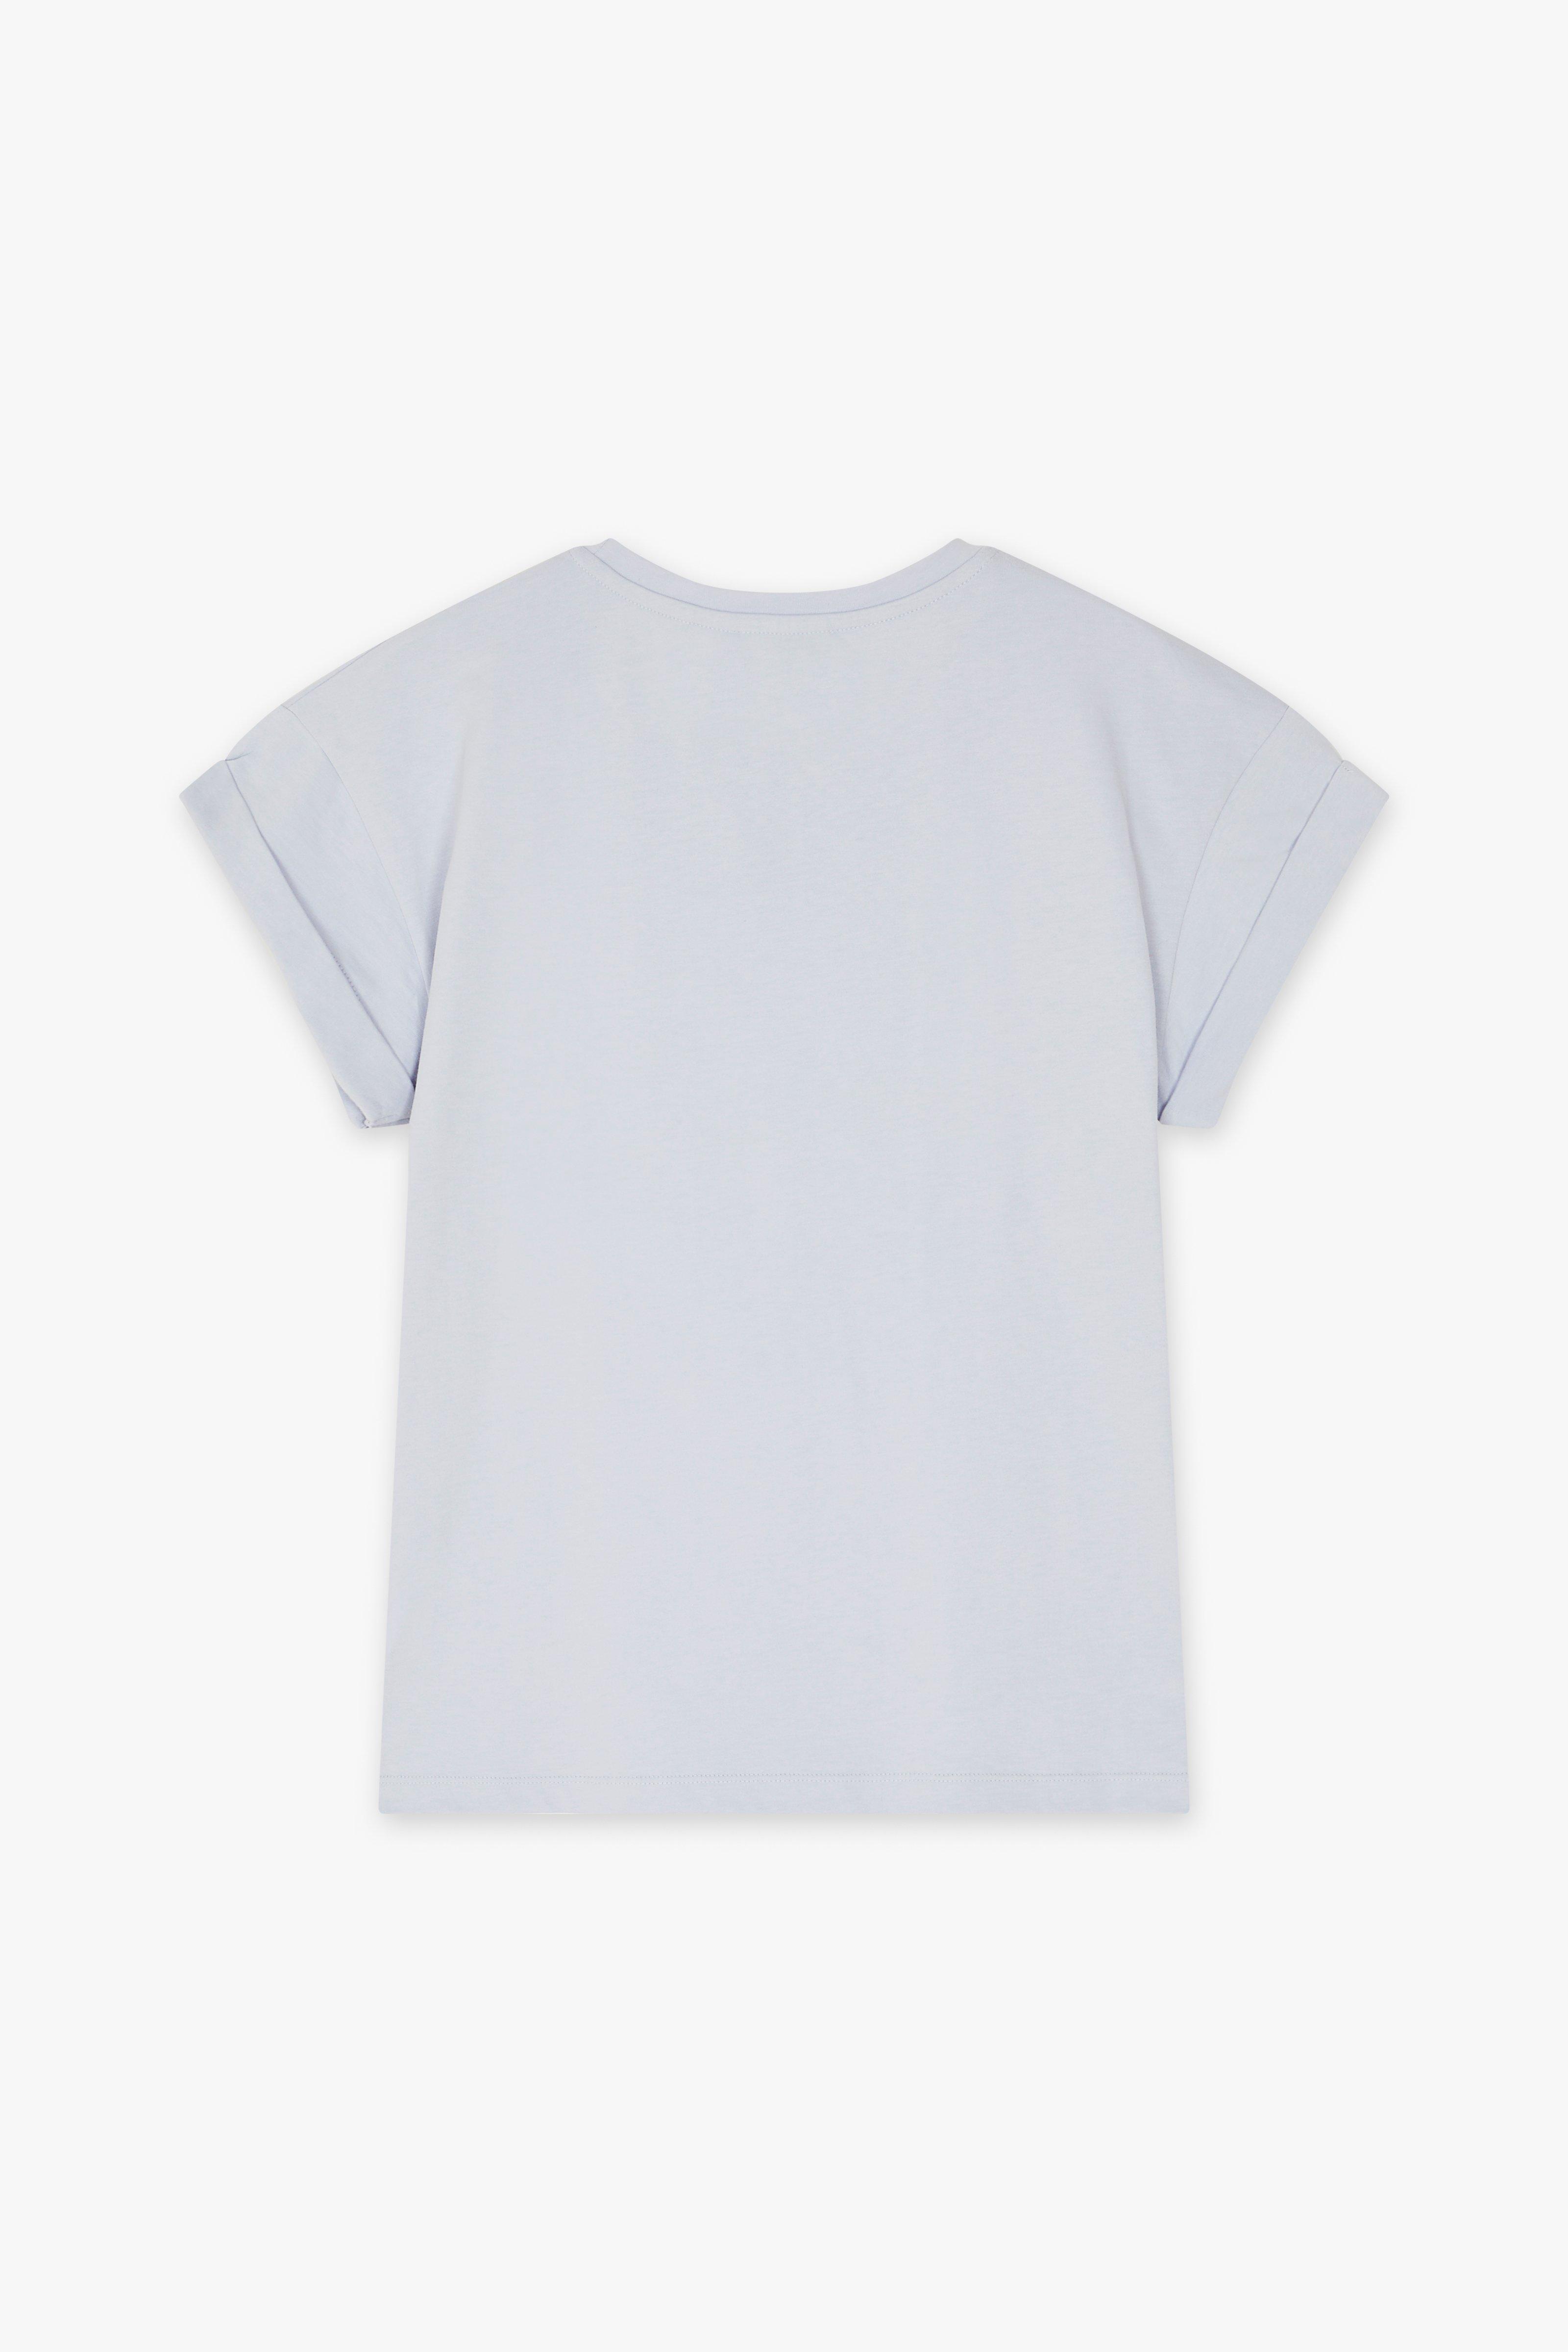 CKS Dames - JUNA - t-shirt short sleeves - light blue